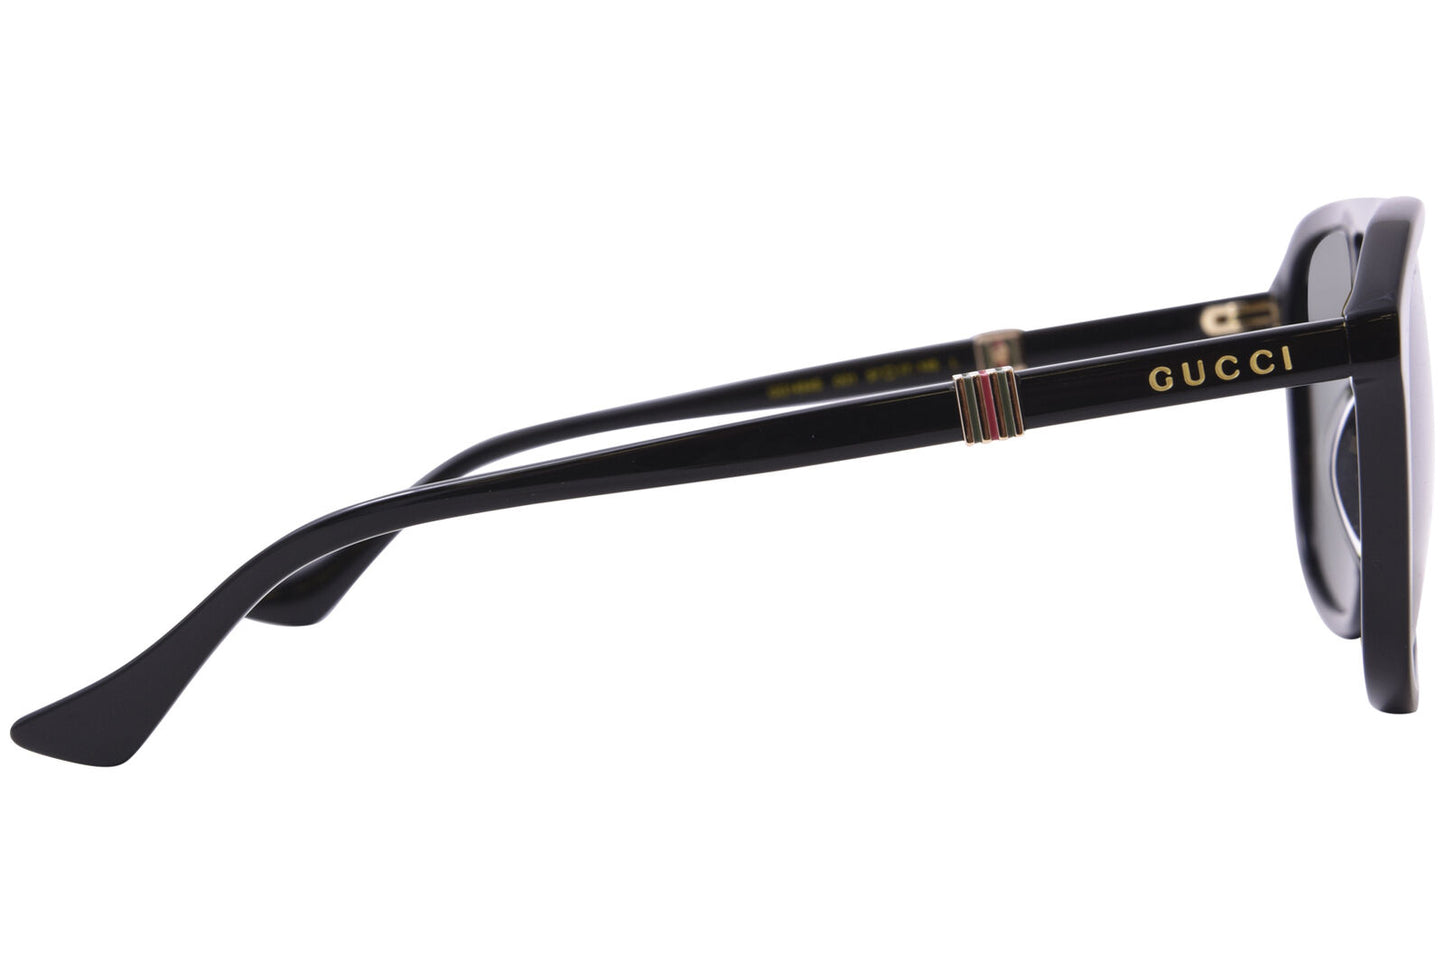 Gucci GG1494S-001 57mm New Sunglasses